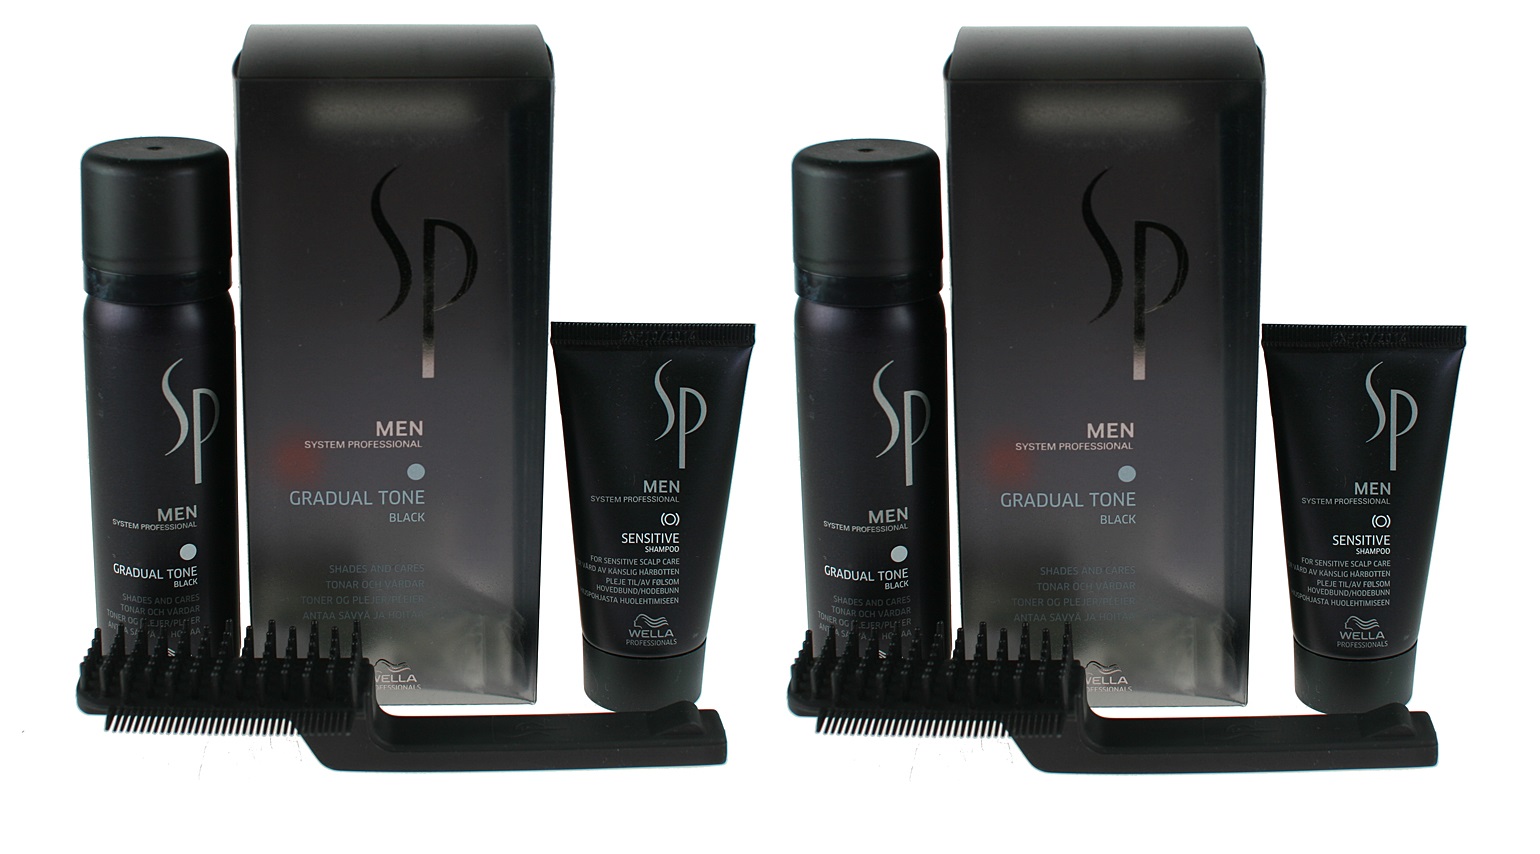 SP Men Gradual Tone Black | Zestaw maskujący siwiznę włosów dla mężczyzn (kolor czarny): pianka pigmentująca 60ml + szampon 30ml + szczotka x2